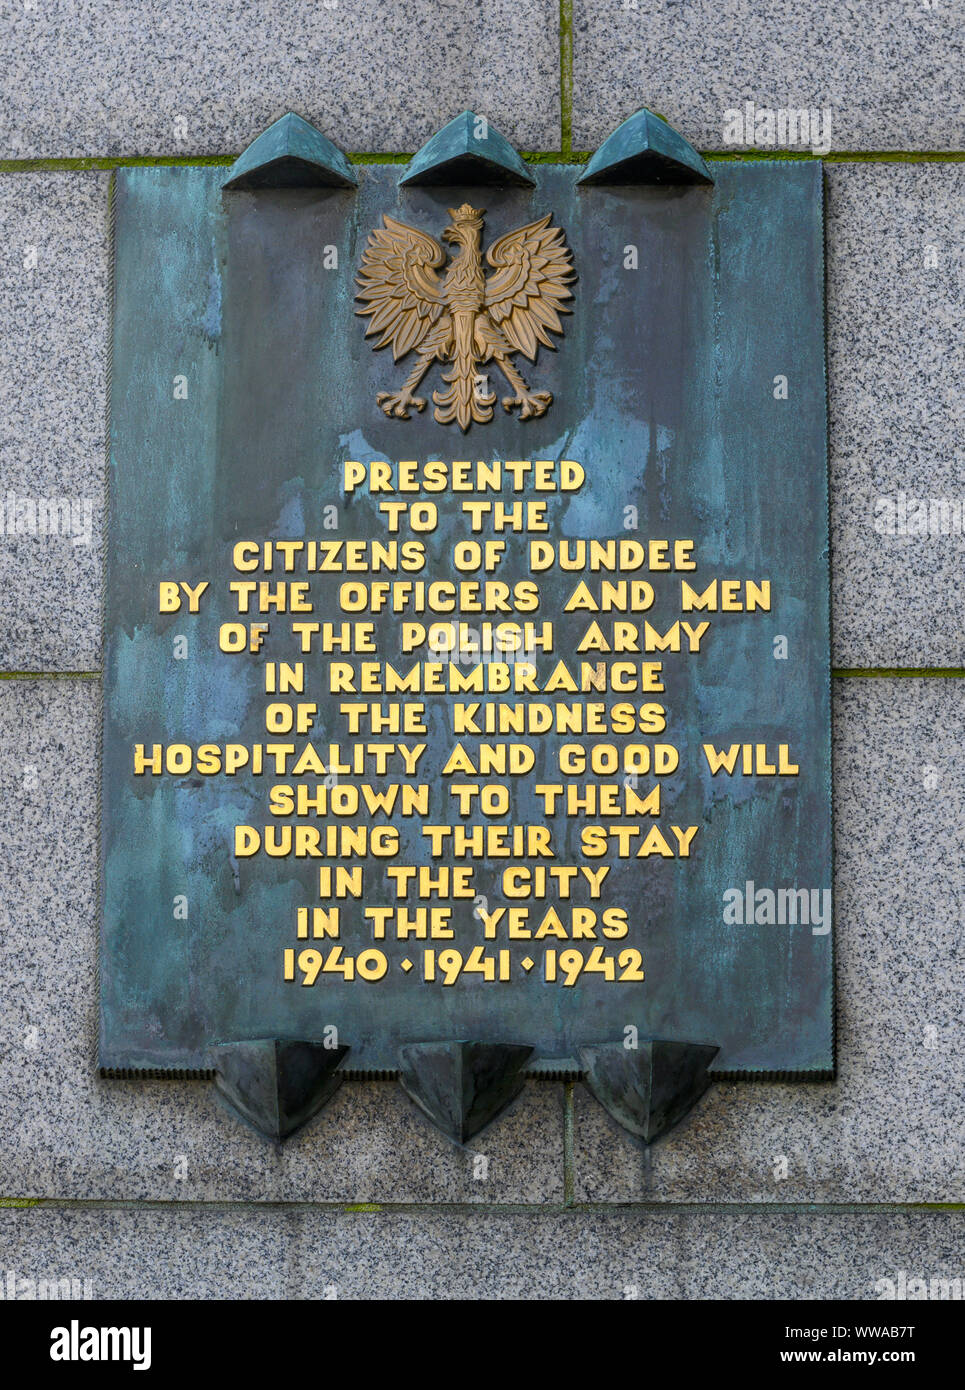 Présenté à la plaque les citoyens de Dundee par des officiers et des hommes de l'armée polonaise, City Square, Dundee, Ecosse, Royaume-Uni Banque D'Images